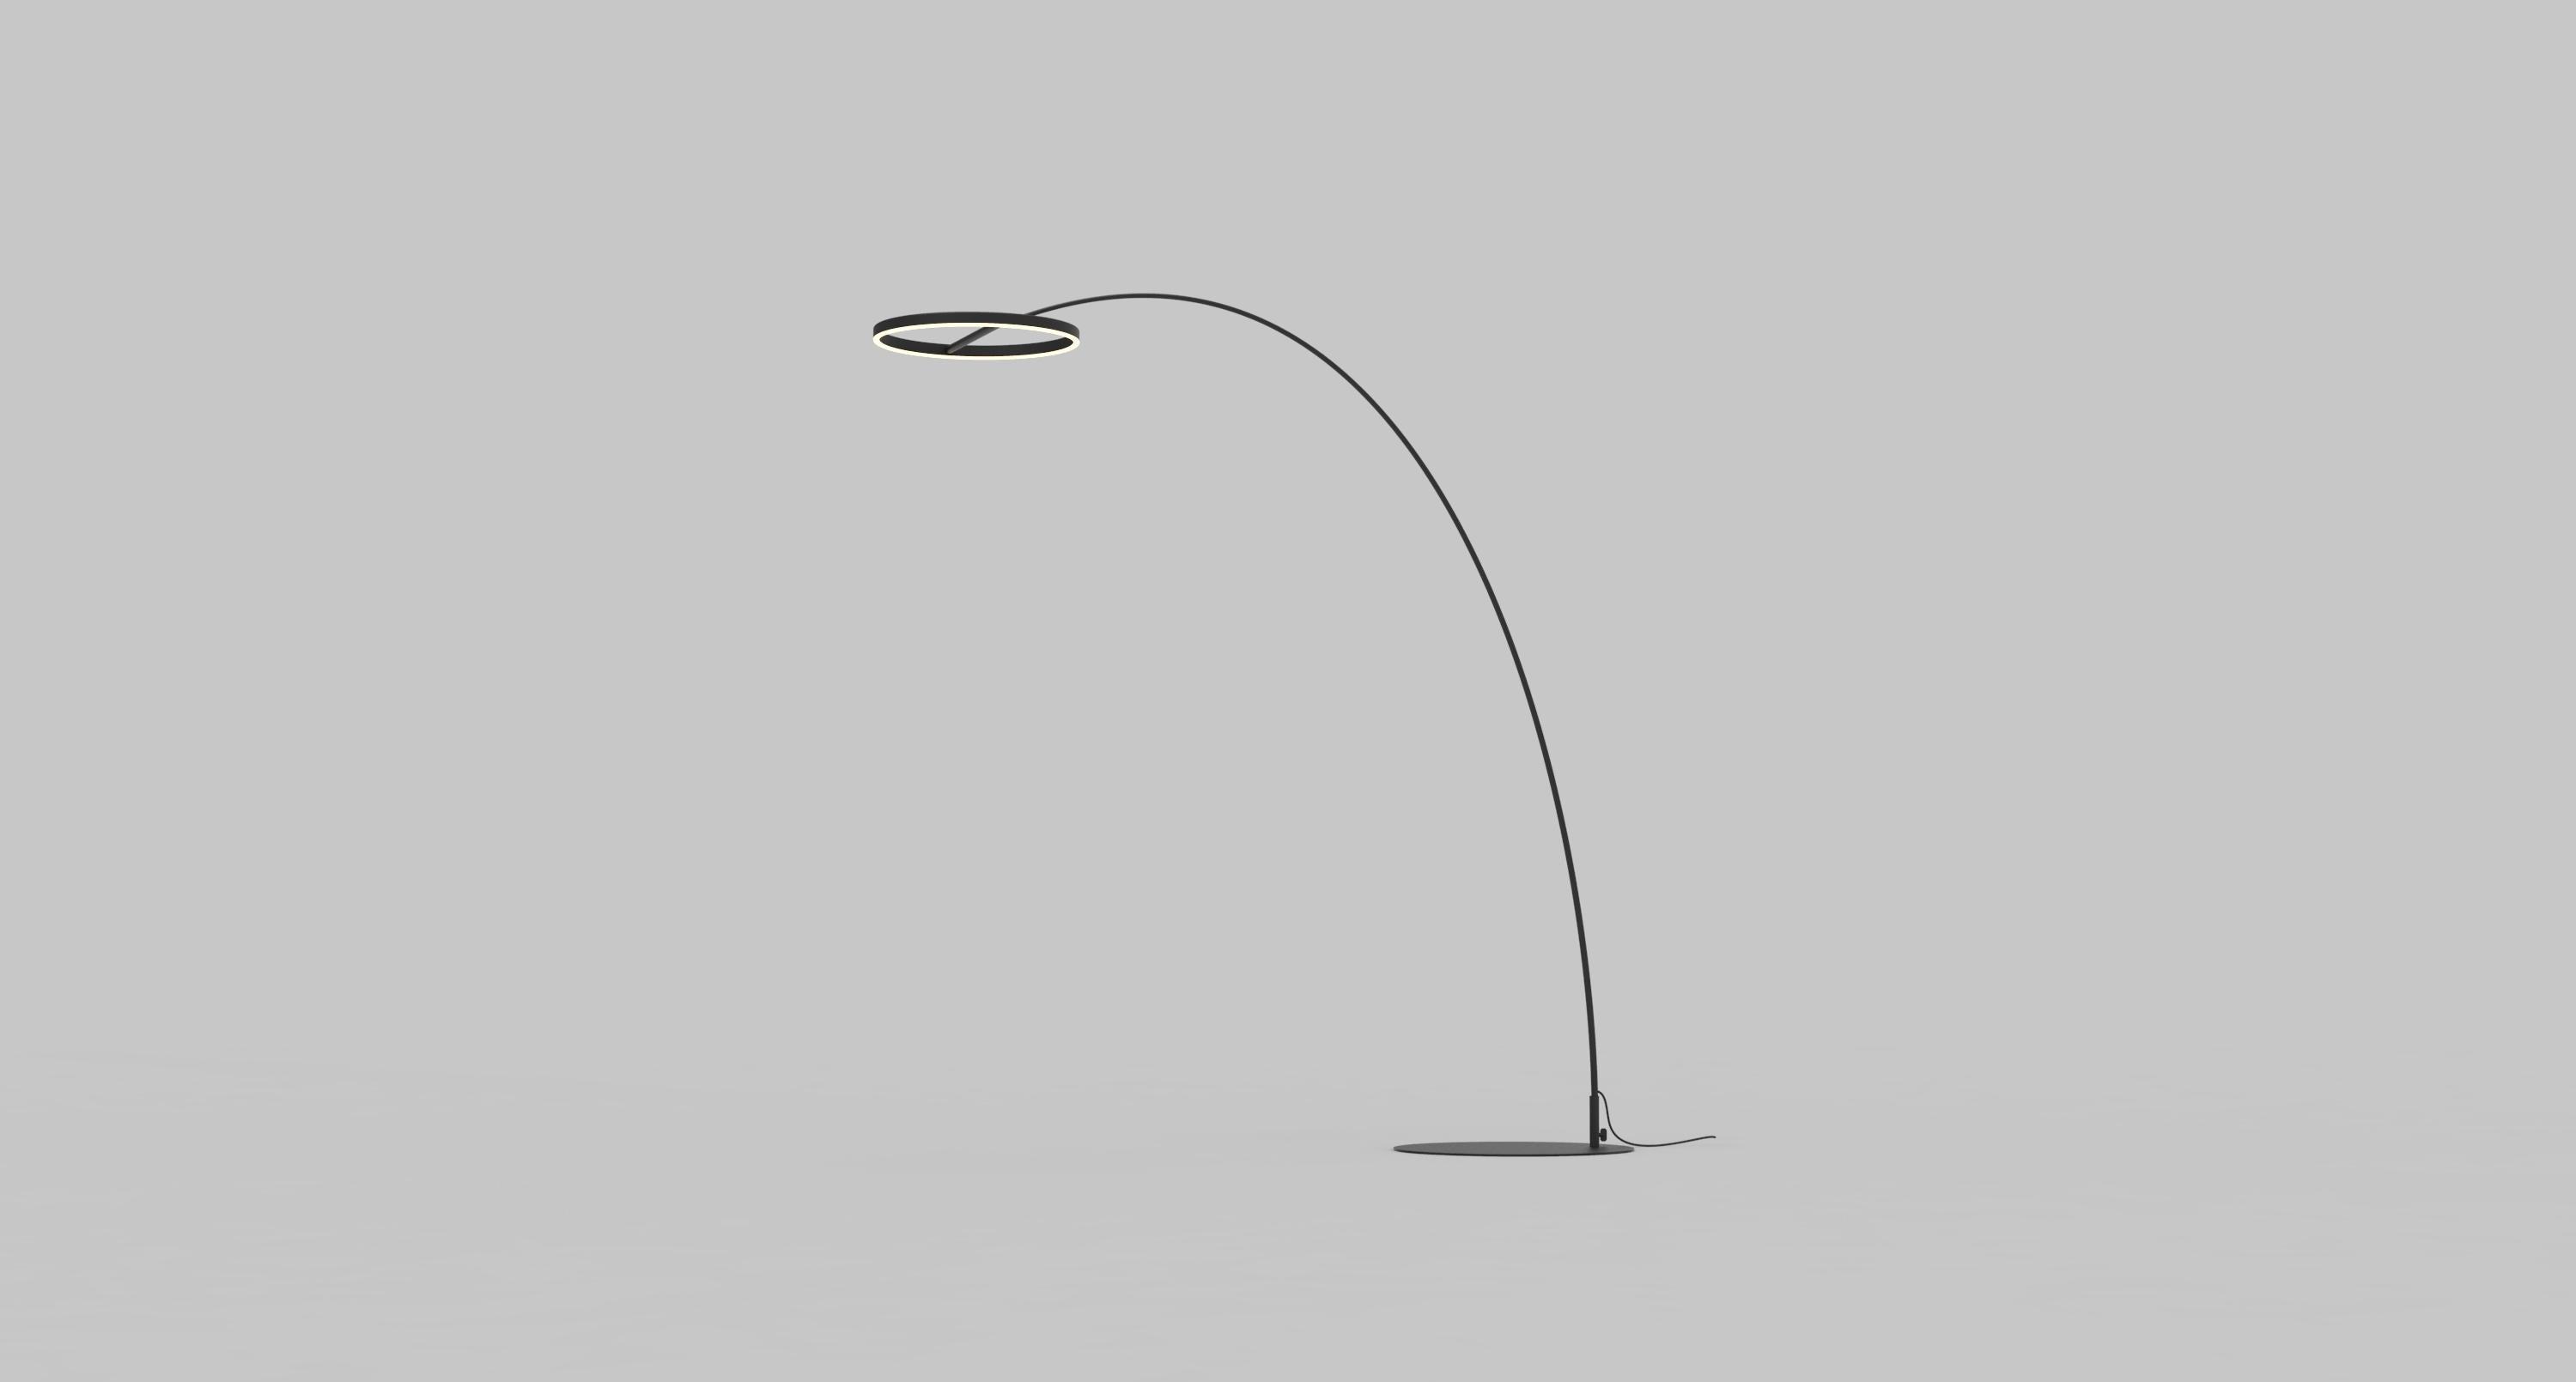 La collection SOL est un design discret avec une considération élaborée. Elle se compose d'un pendentif, d'une lampe de table, d'un lampadaire et d'une applique murale. Le SOL crée un effet de halo grâce à son abat-jour réglable en forme d'anneau